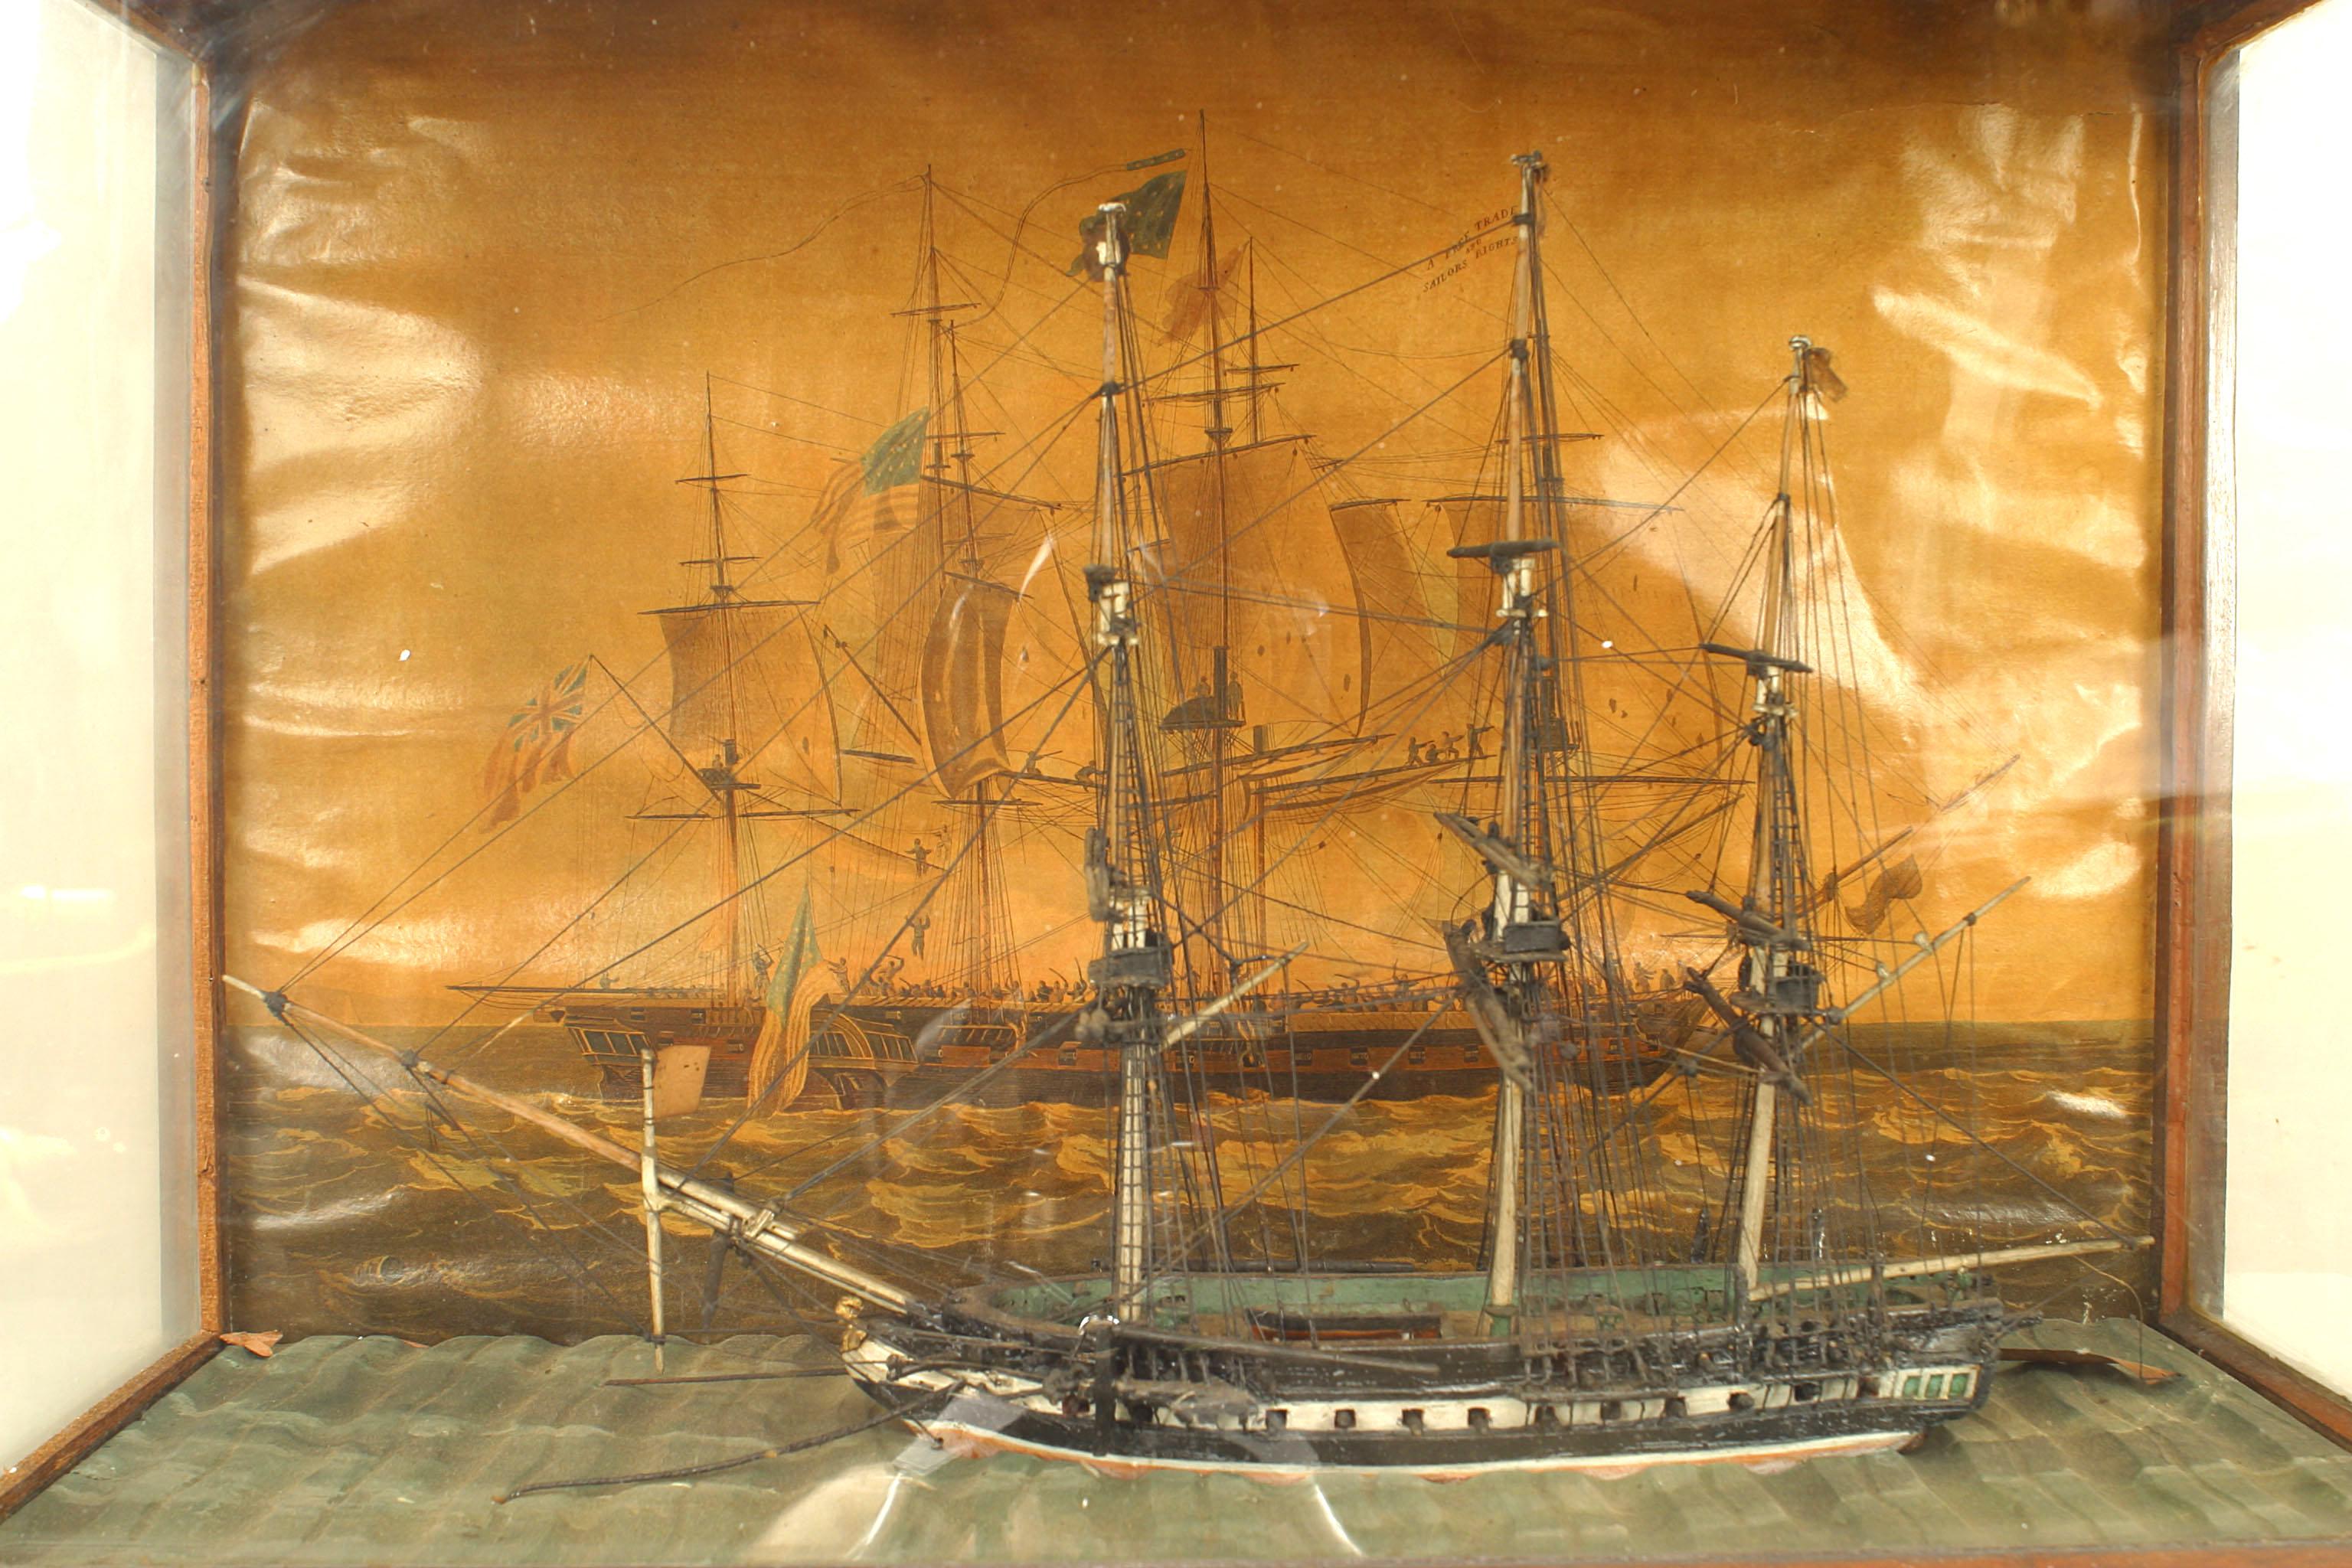 Bemalte Diorama-Wandtafel im amerikanischen Landhausstil (19. Jh.) mit Klipperschiff und amerikanischem Schiff auf der Rückseite in einem Mahagoni-Rahmen, der in einer Holz- und Glasvitrine untergebracht ist.
 